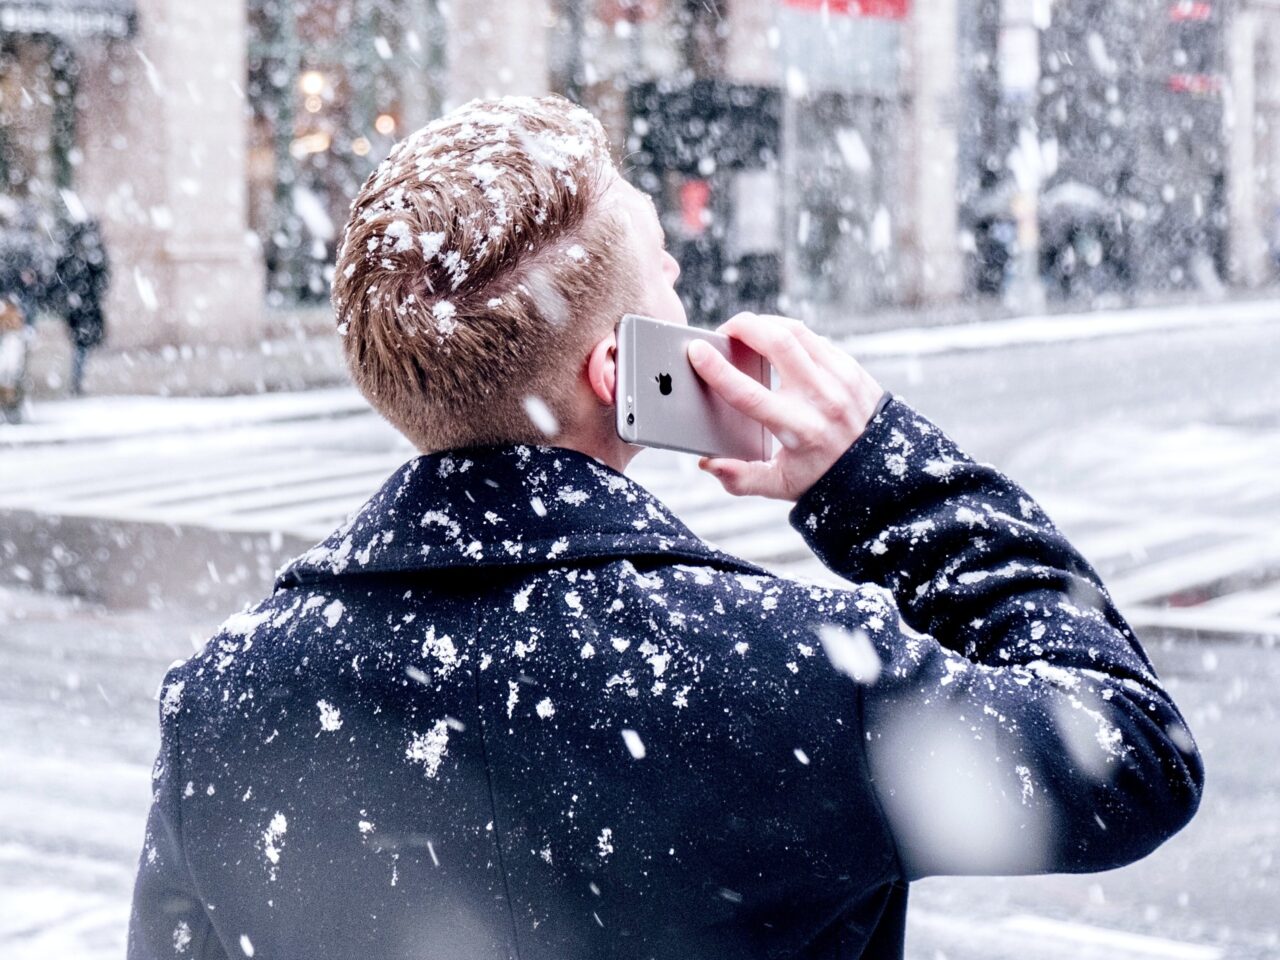 telefon Apple iPhone trzymany przez mężczyznę, którego mogło spotkać oszustwo na telefon z banku, prowadzi on rozmowę telefoniczną na dworze, pada śnieg